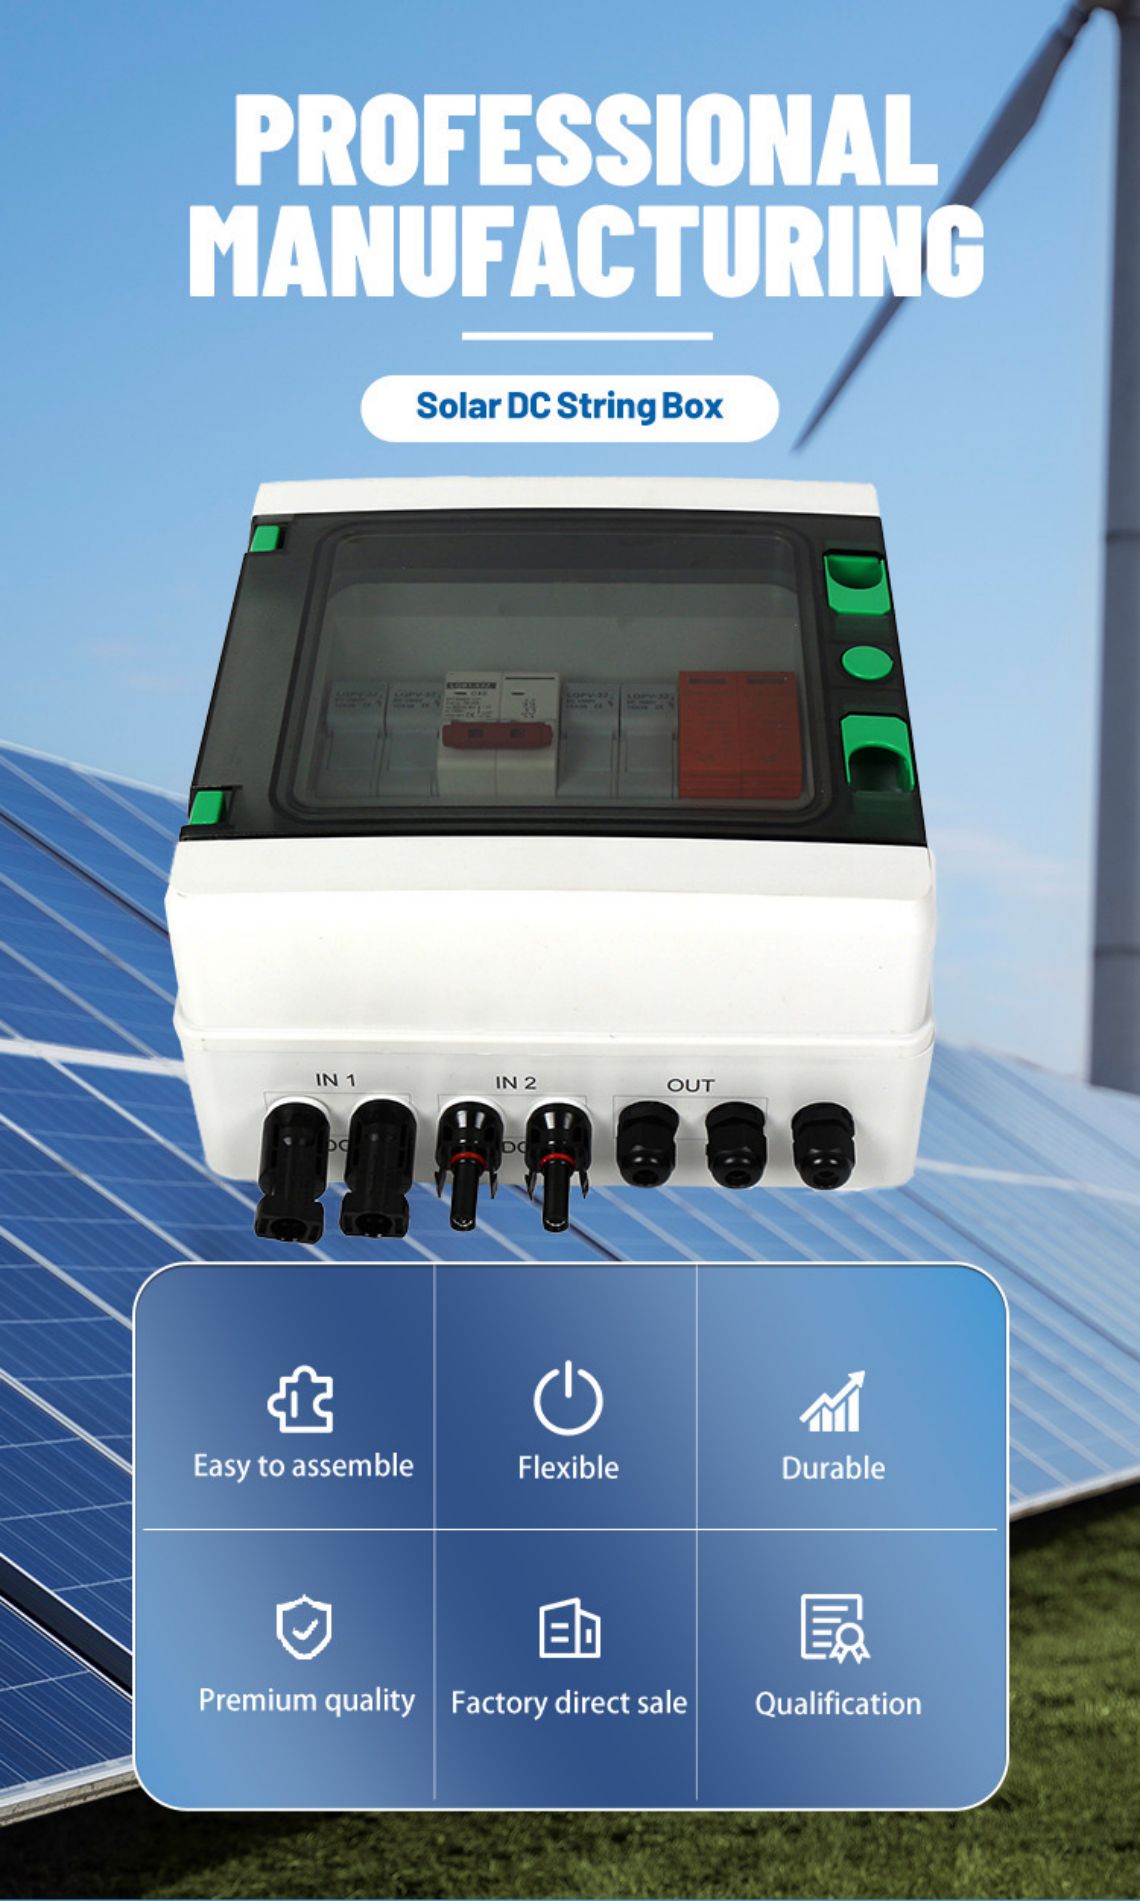 solar pv combiner box